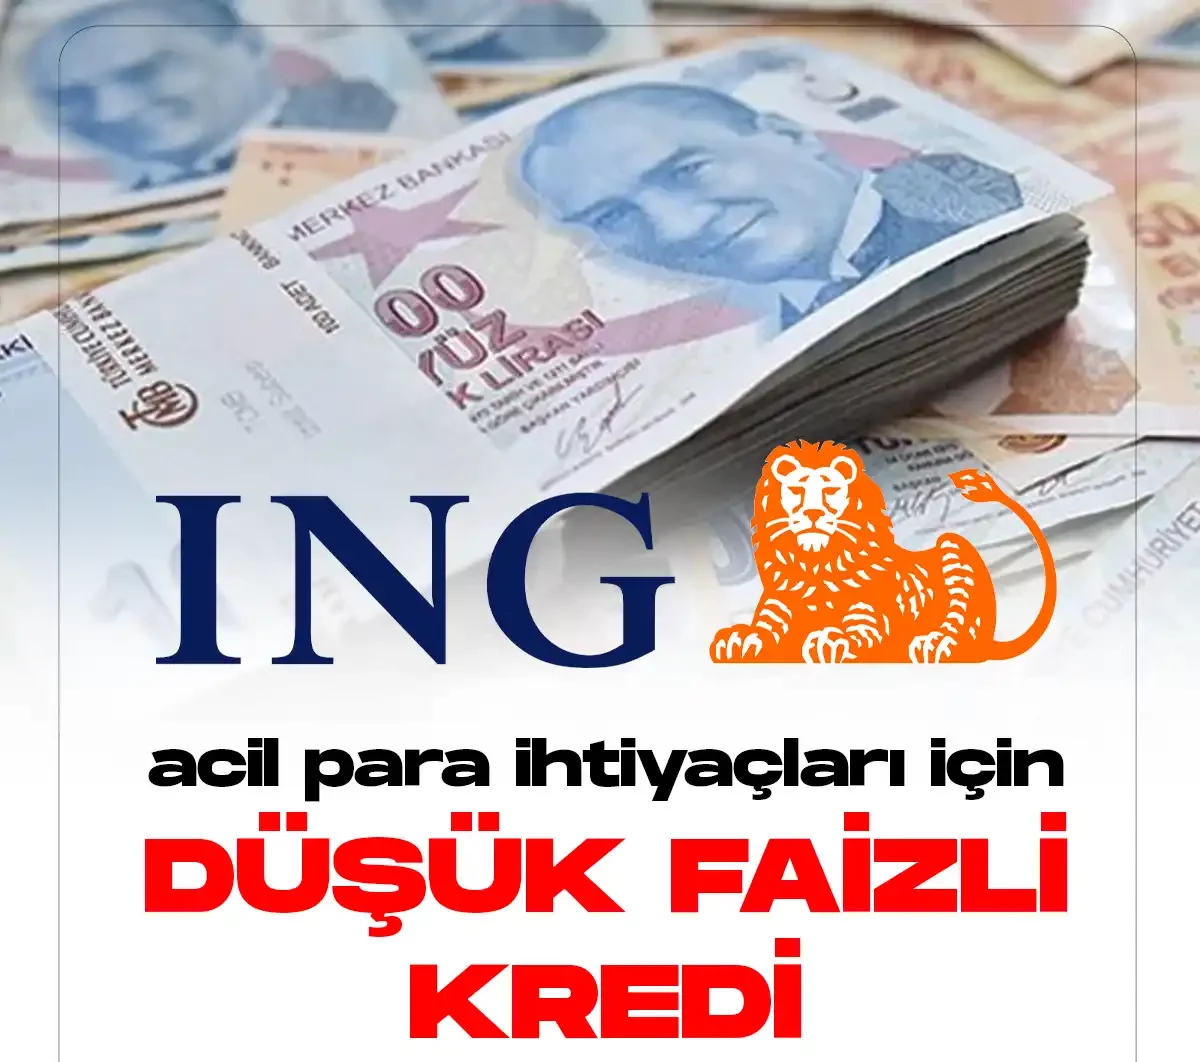 ING Bank düşük faizli kredi kampanyasını duyurdu.